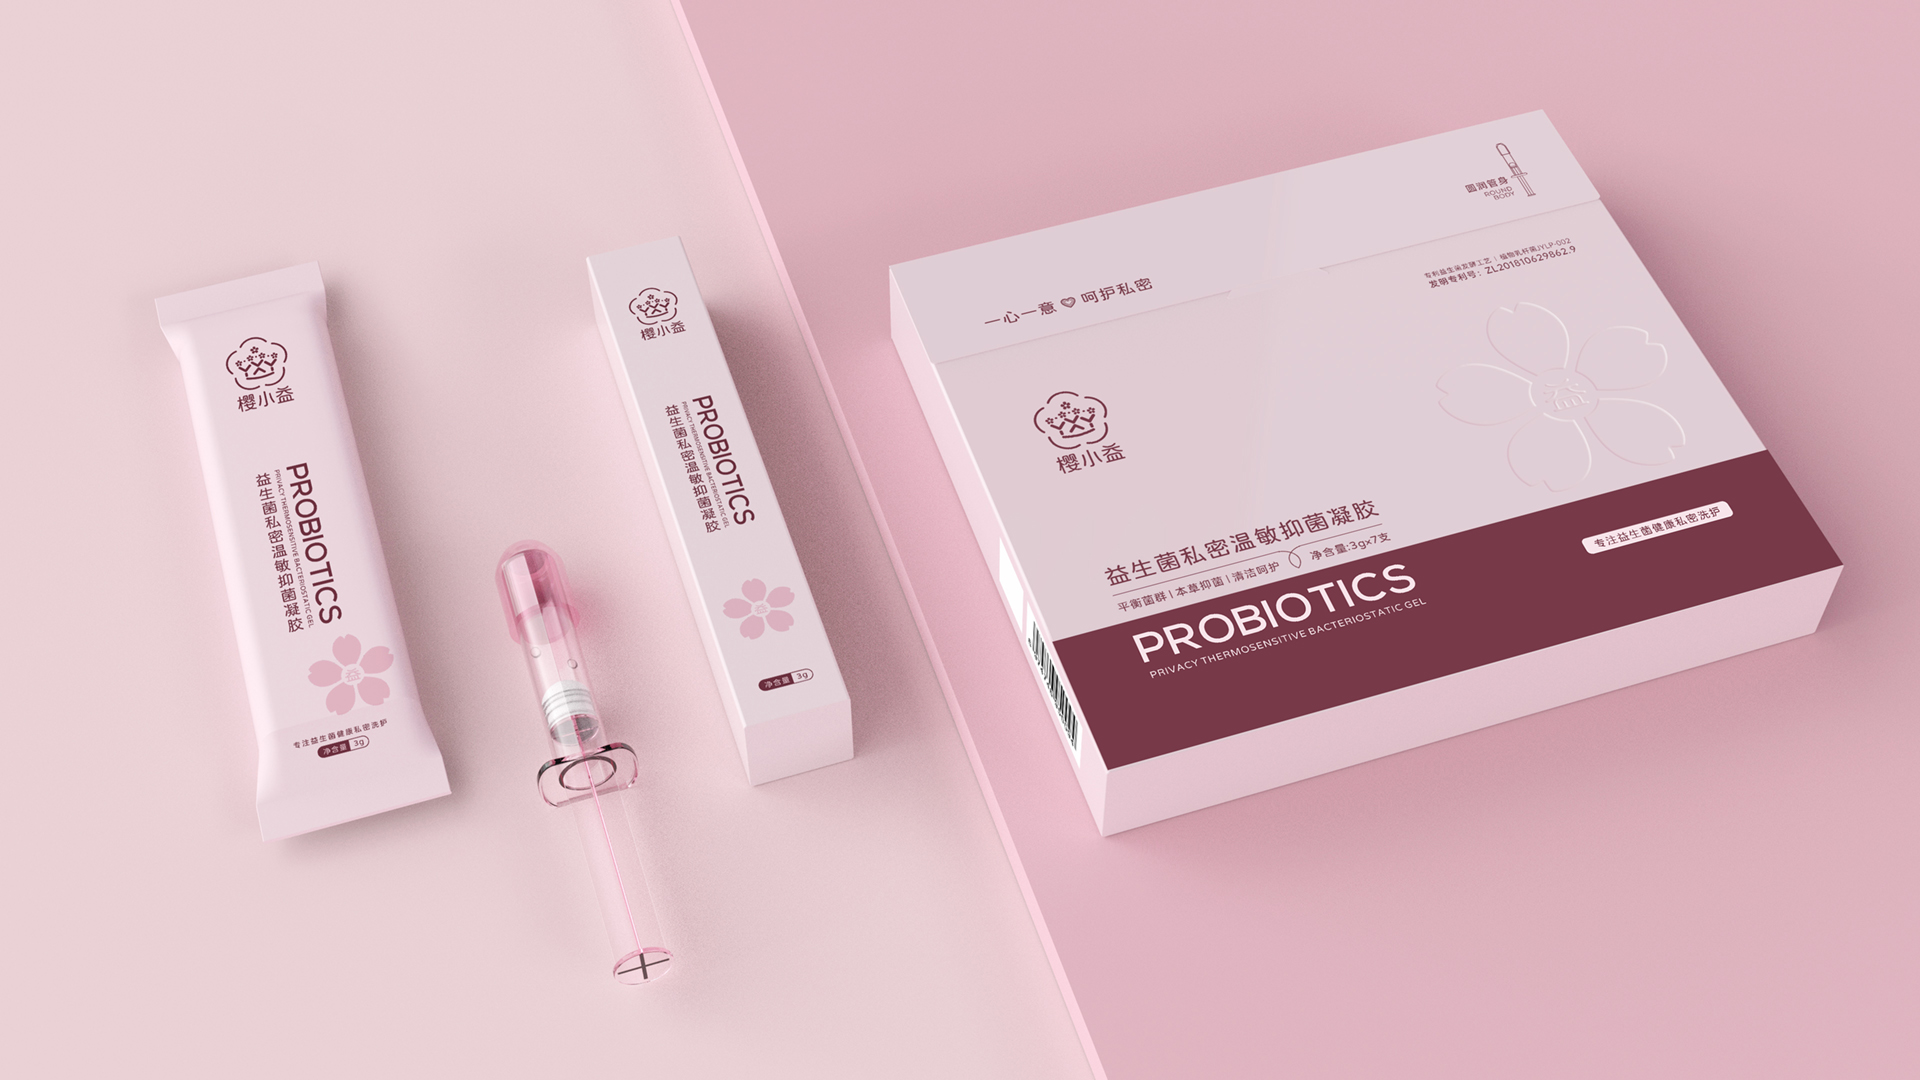 武漢醫療品牌衛生洗護品牌策劃設計